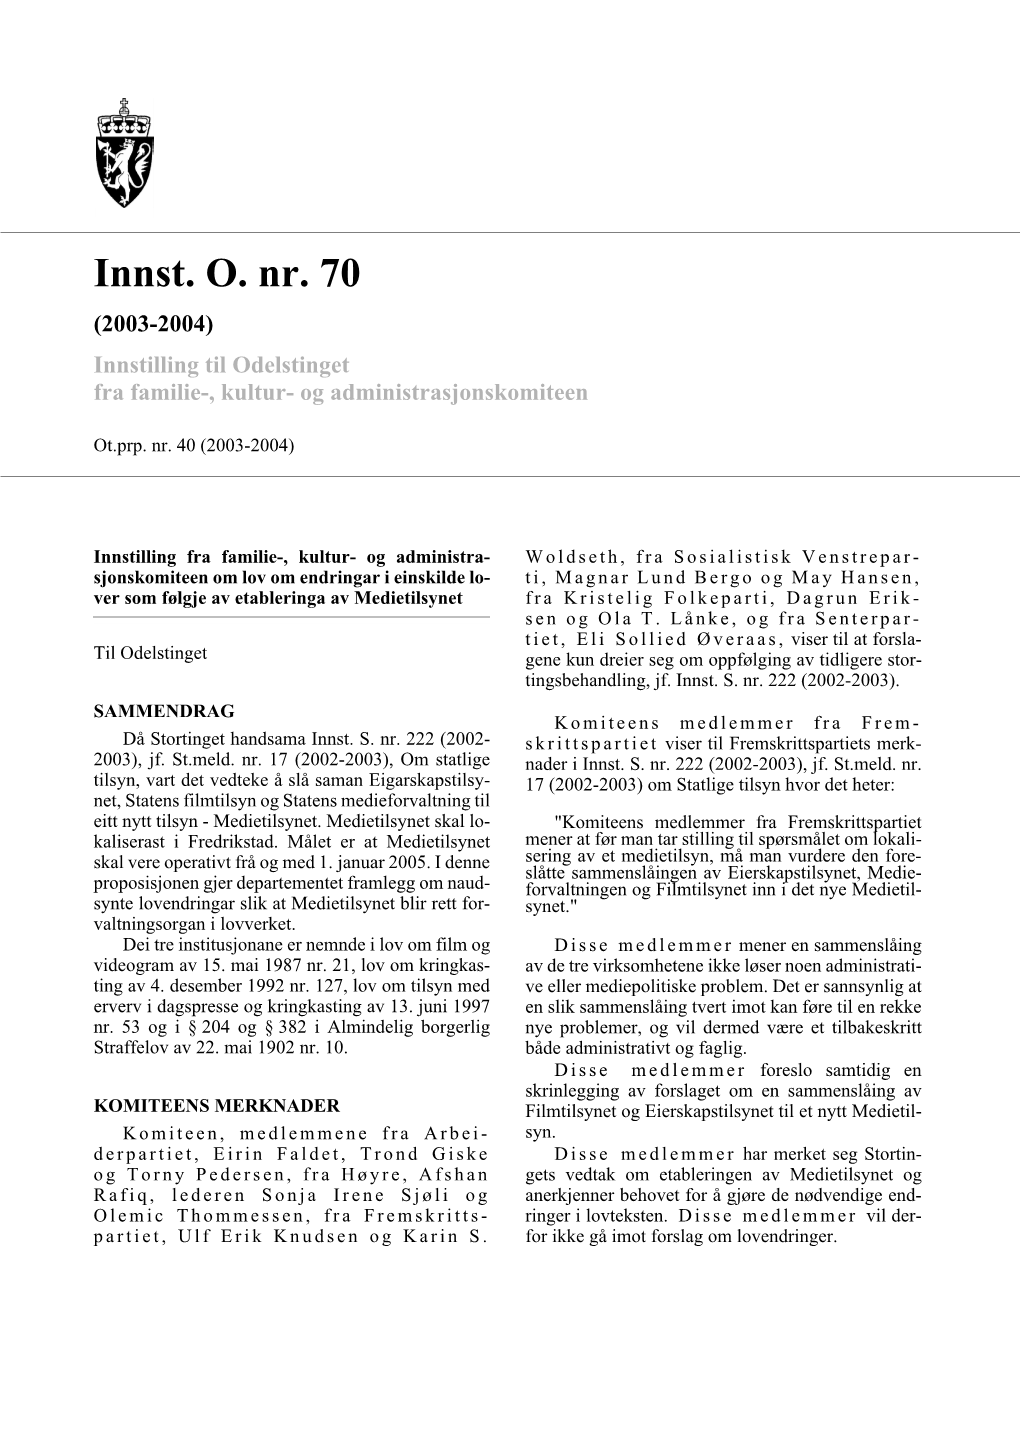 Innst. O. Nr. 70 (2003-2004) Innstilling Til Odelstinget Fra Familie-, Kultur- Og Administrasjonskomiteen